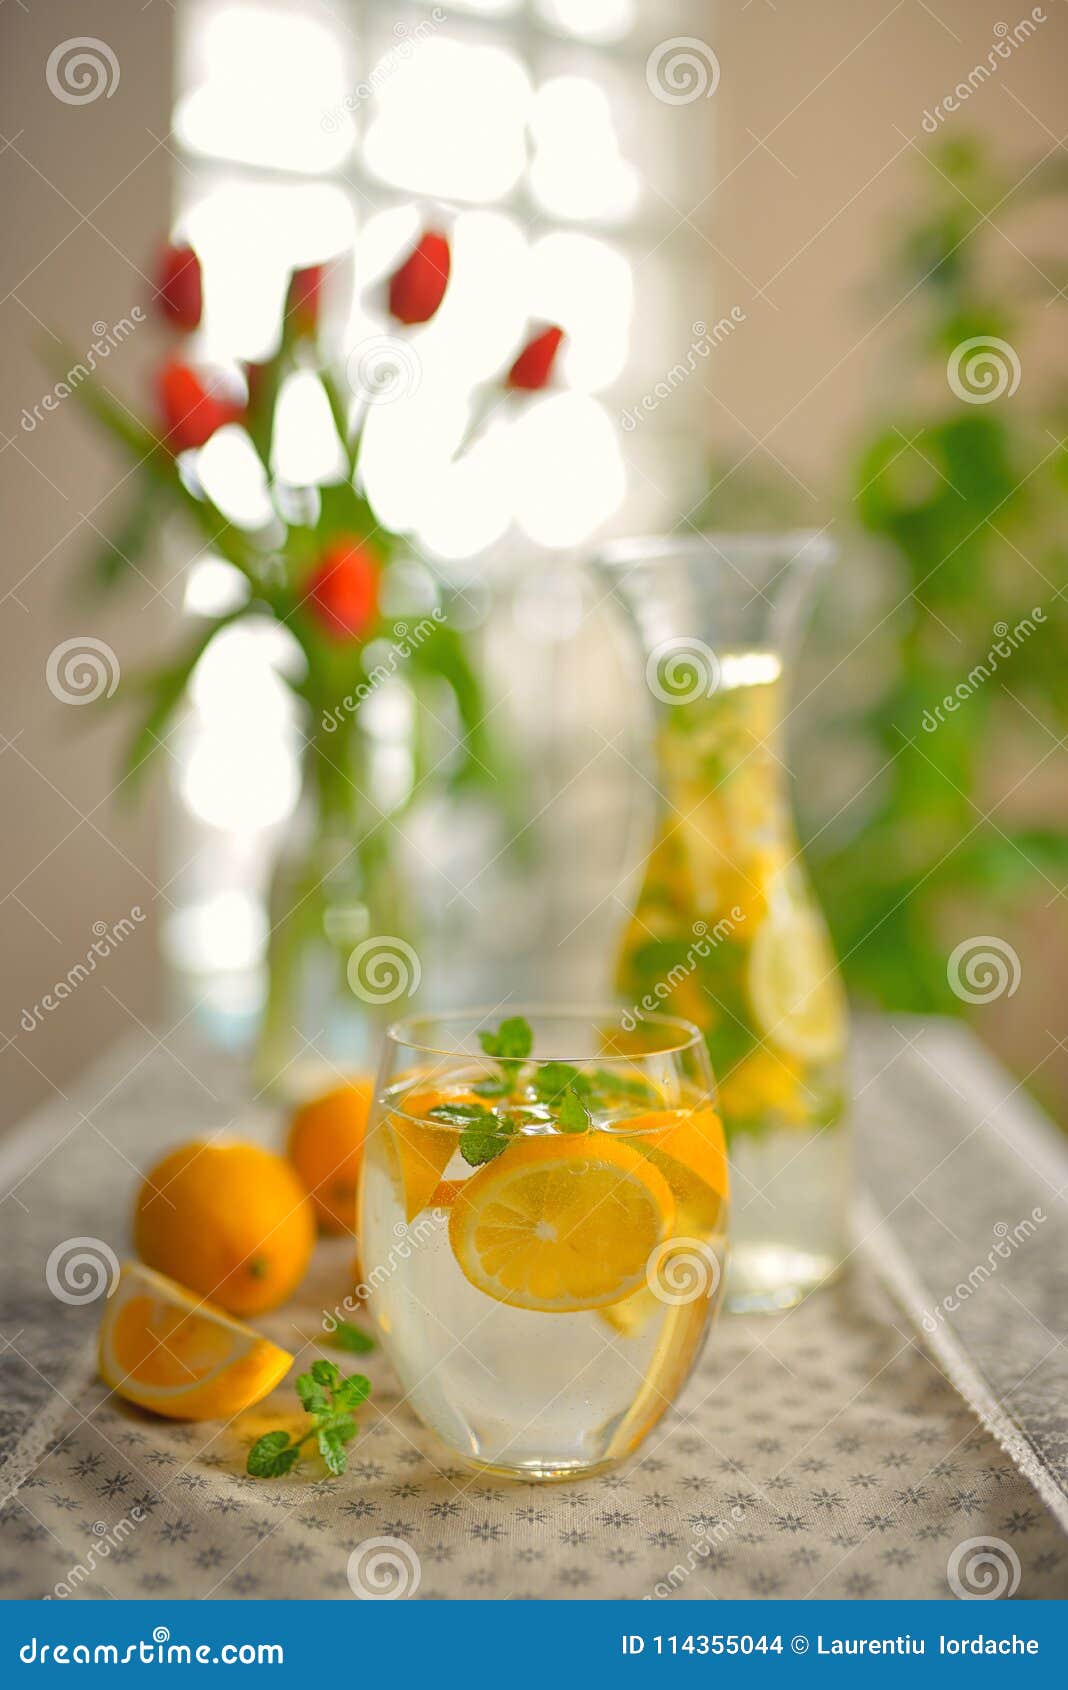 fresh limes and lemonade on table